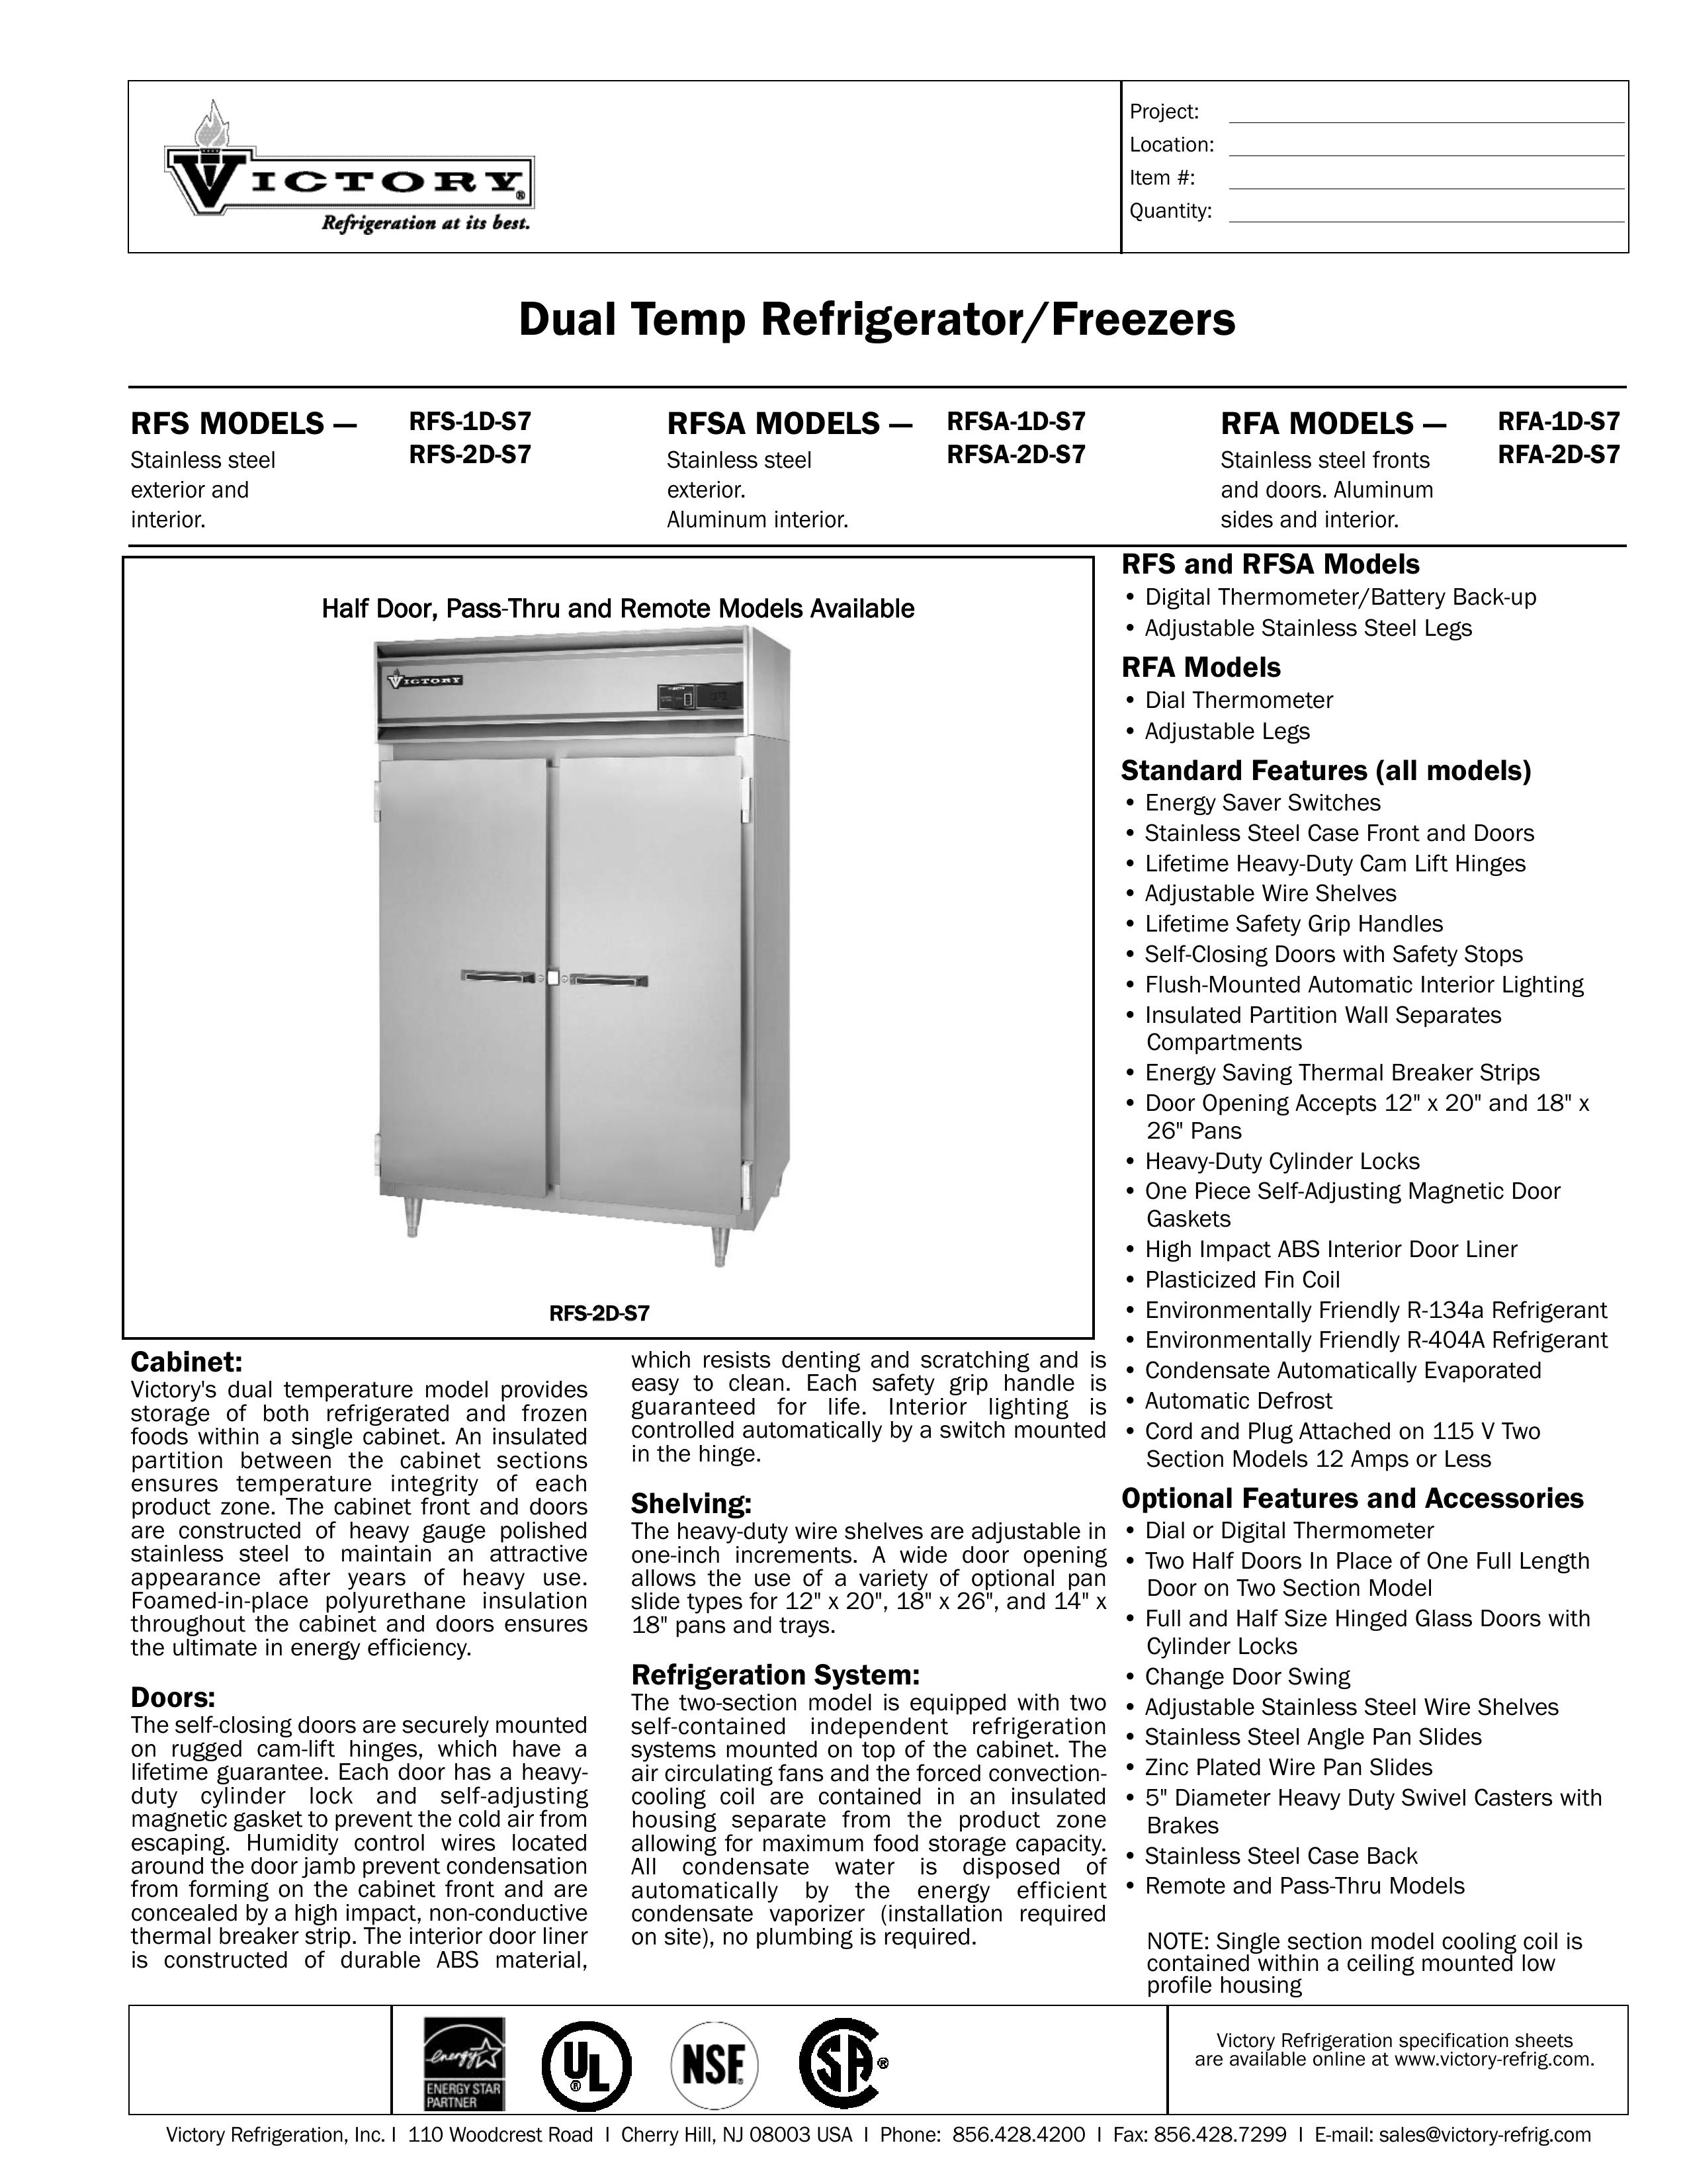 Victory Refrigeration RFA-1D-S7 Refrigerator User Manual